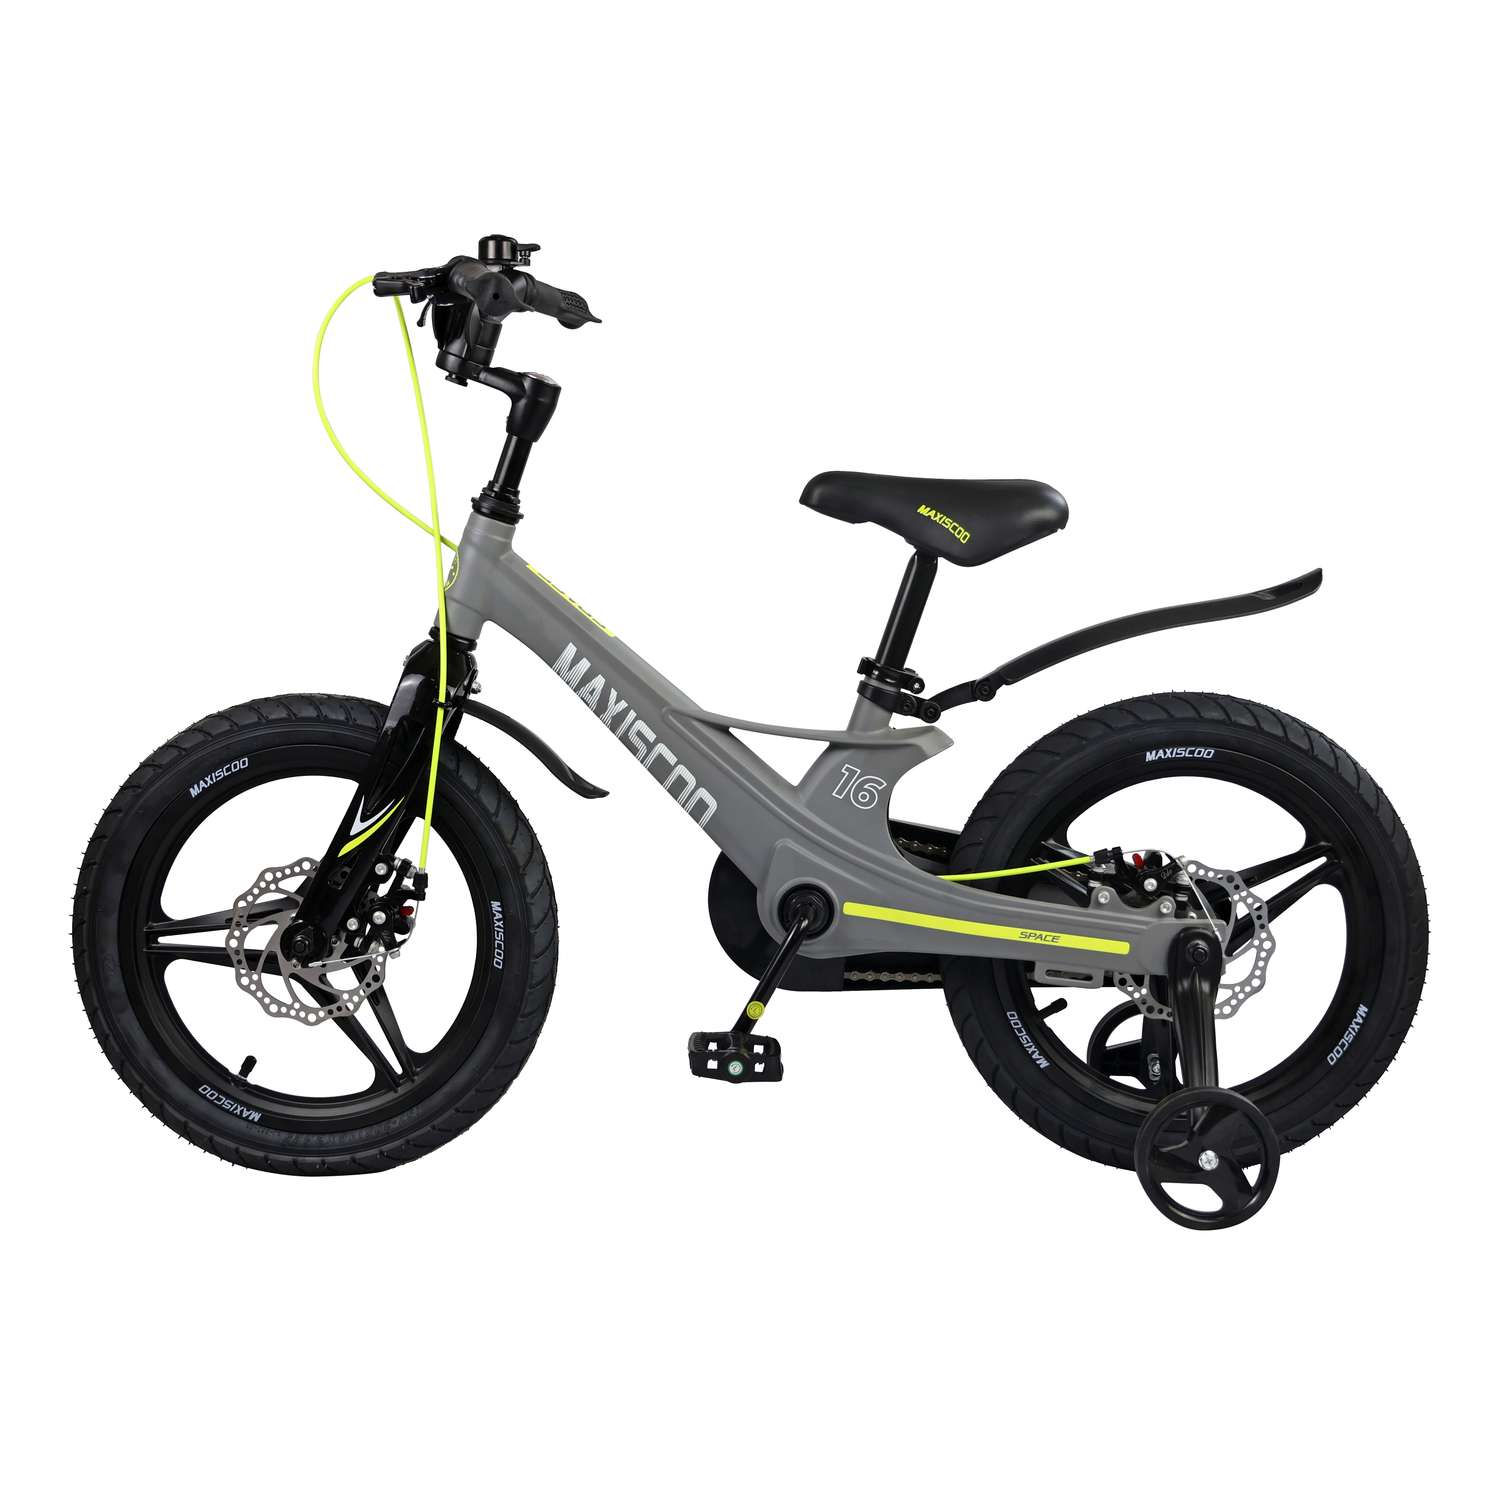 Детский двухколесный велосипед Maxiscoo Space делюкс 16 серый матовый - фото 3